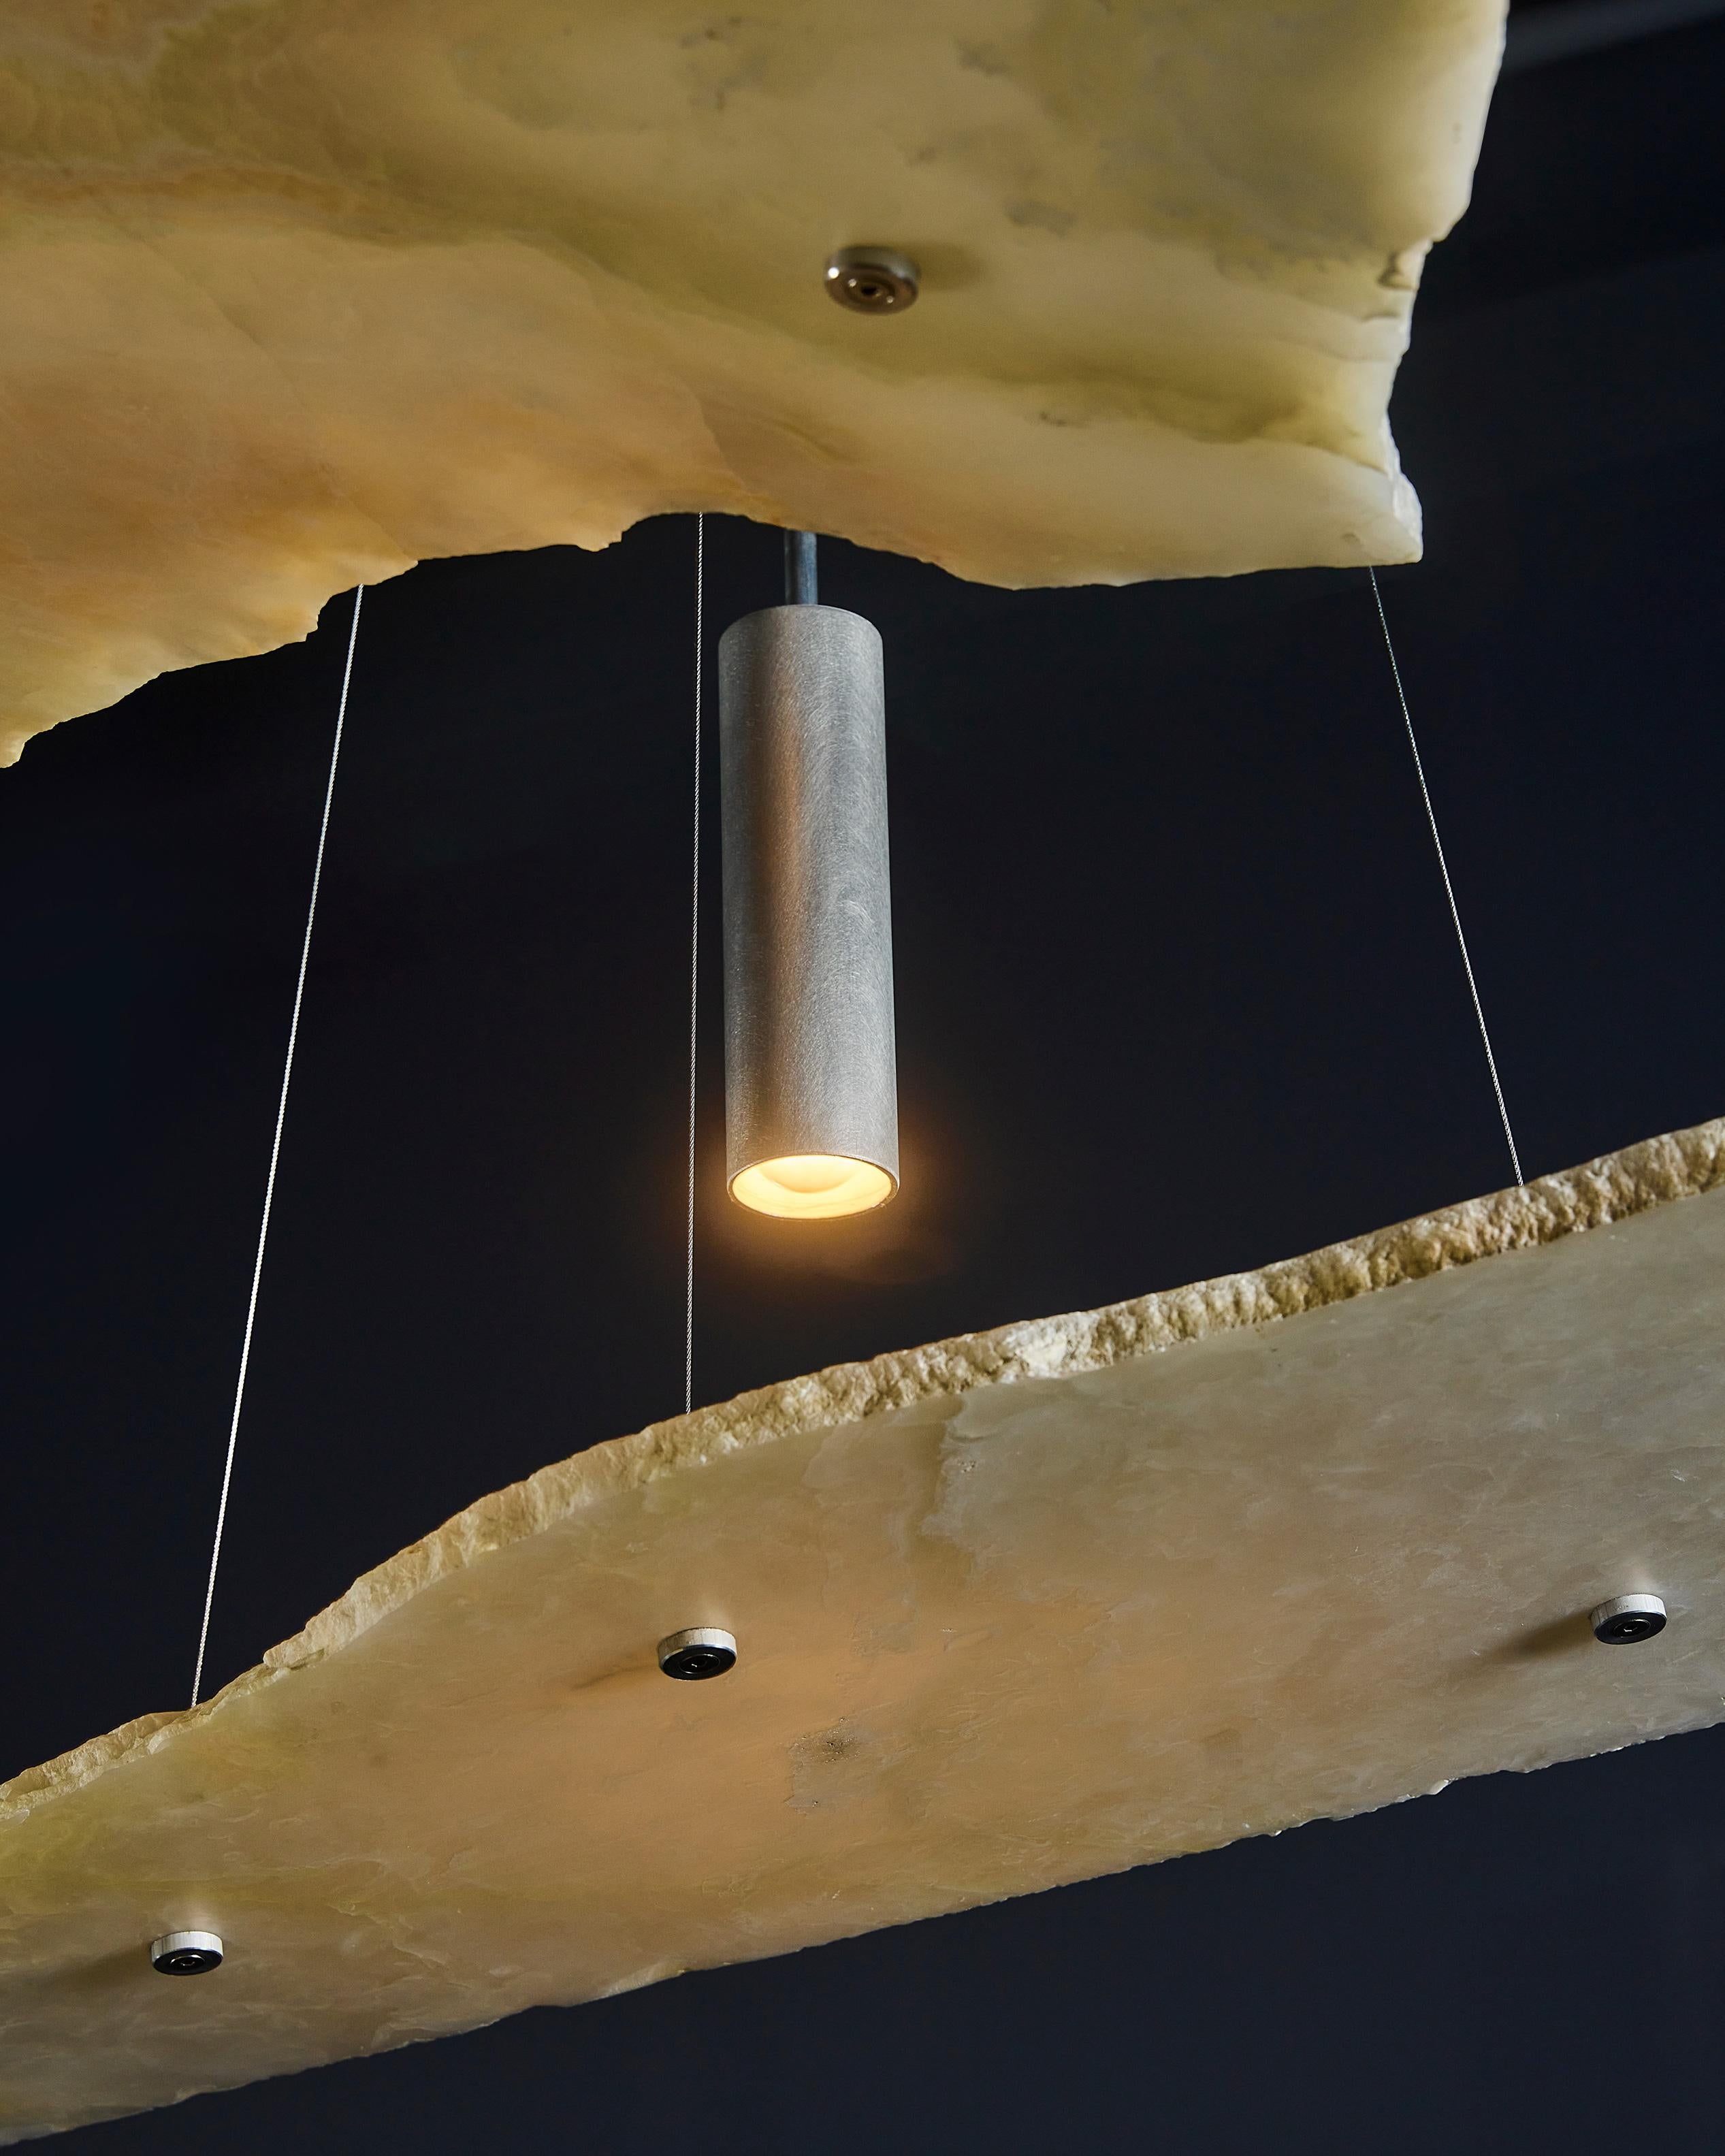 Le lustre Unbroken utilise de l'onyx blanc à bords bruts en suspension pour créer une expérience visuelle puissante avec la lumière. Les arêtes naturelles de la pierre sont laissées apparentes et contrastent avec la surface adoucie de la dalle. En